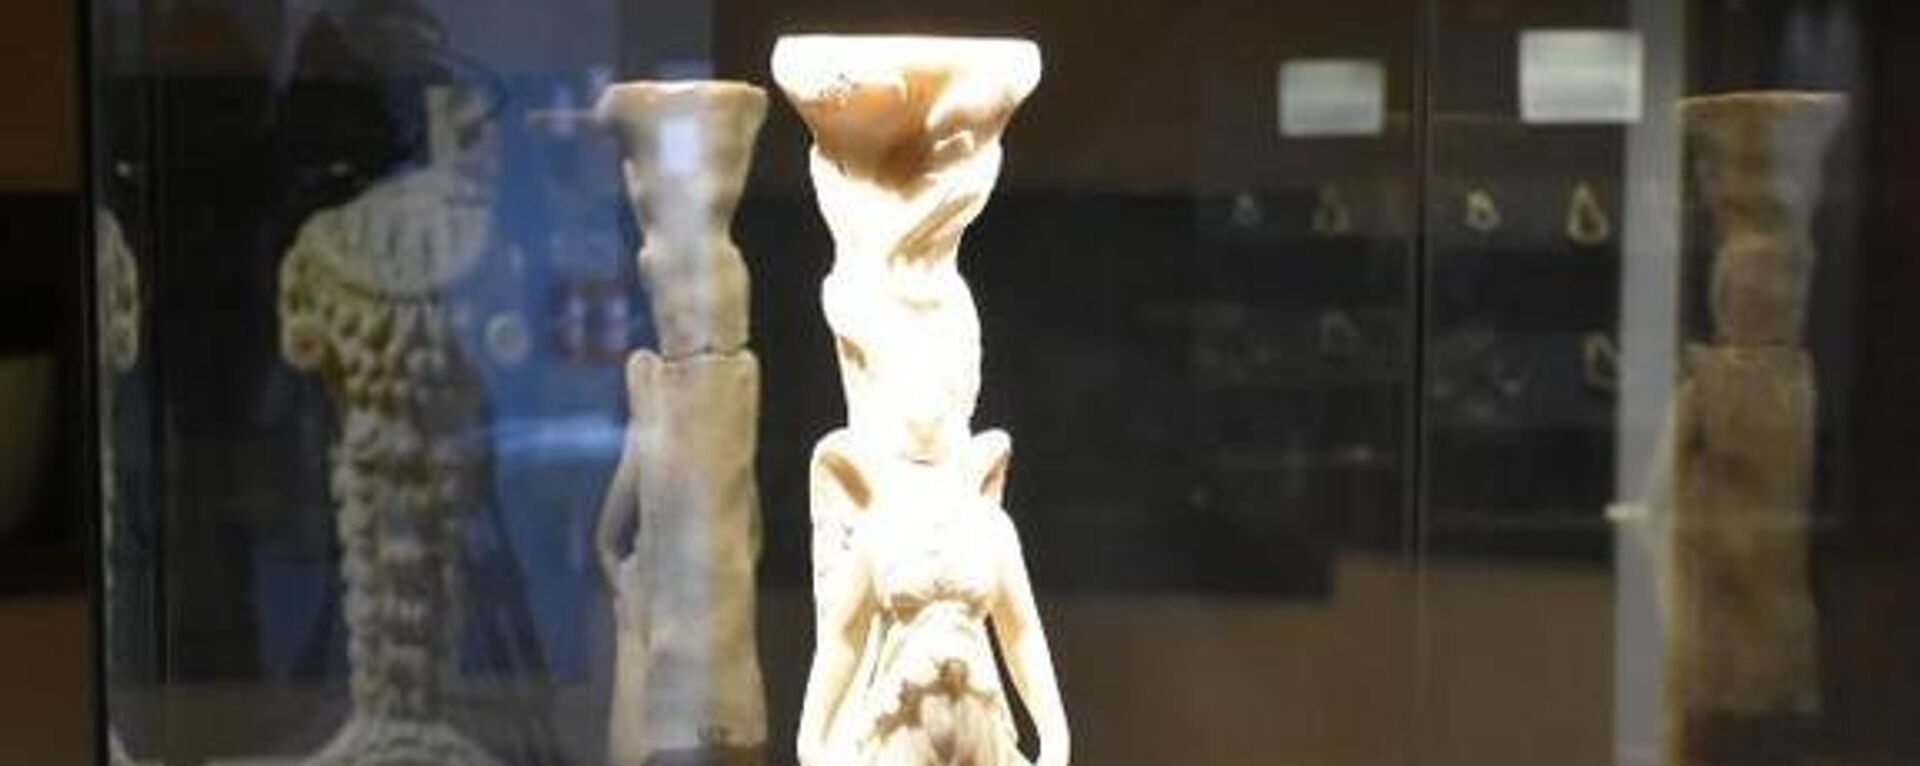 Yunan mitolojisinde 'zafer tanrıçası' olarak bilinen 2 bin 500 yıllık Nike heykeli, bulunduktan 1 asır sonra İzmir Arkeoloji Müzesi'nde ilk kez sergiye çıkarıldı. - Sputnik Türkiye, 1920, 04.08.2022